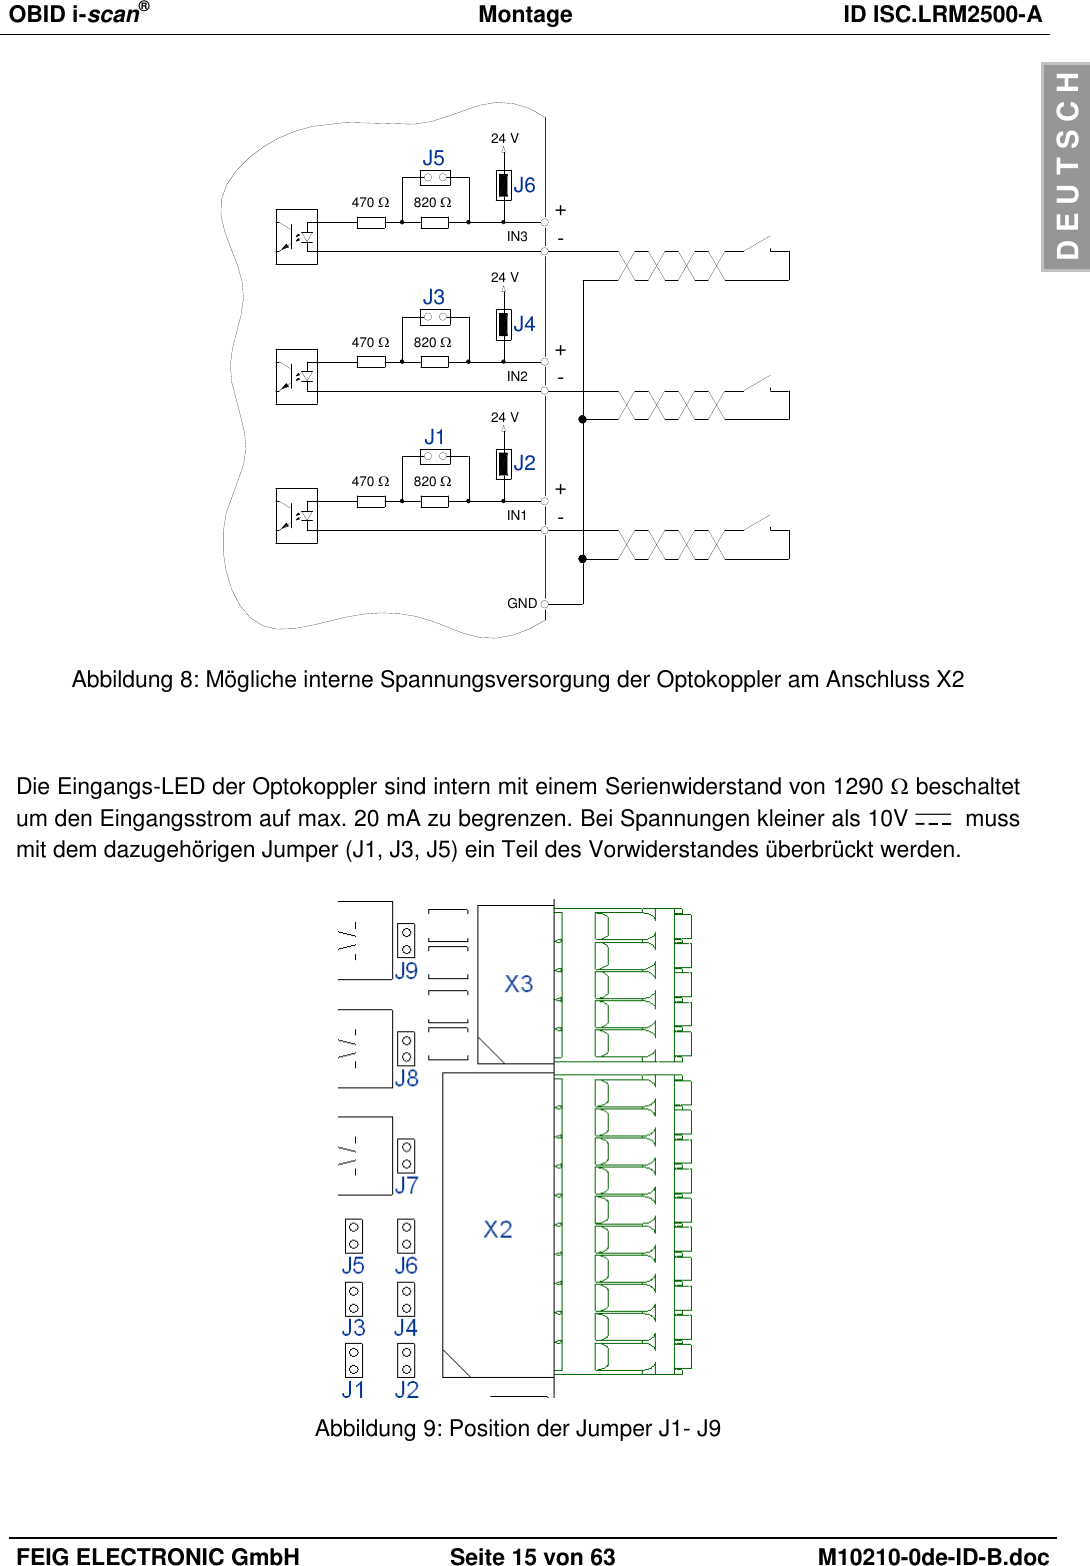 OBID i-scan®  Montage ID ISC.LRM2500-A  FEIG ELECTRONIC GmbH Seite 15 von 63 M10210-0de-ID-B.doc  D E U T S C H  470 +IN1 -820 J2J1 24 V470 +IN2 -820 J4J3 24 V470 +IN3 -820 J6J5 24 VGND Abbildung 8: Mögliche interne Spannungsversorgung der Optokoppler am Anschluss X2   Die Eingangs-LED der Optokoppler sind intern mit einem Serienwiderstand von 1290  beschaltet um den Eingangsstrom auf max. 20 mA zu begrenzen. Bei Spannungen kleiner als 10V    muss mit dem dazugehörigen Jumper (J1, J3, J5) ein Teil des Vorwiderstandes überbrückt werden.   Abbildung 9: Position der Jumper J1- J9  